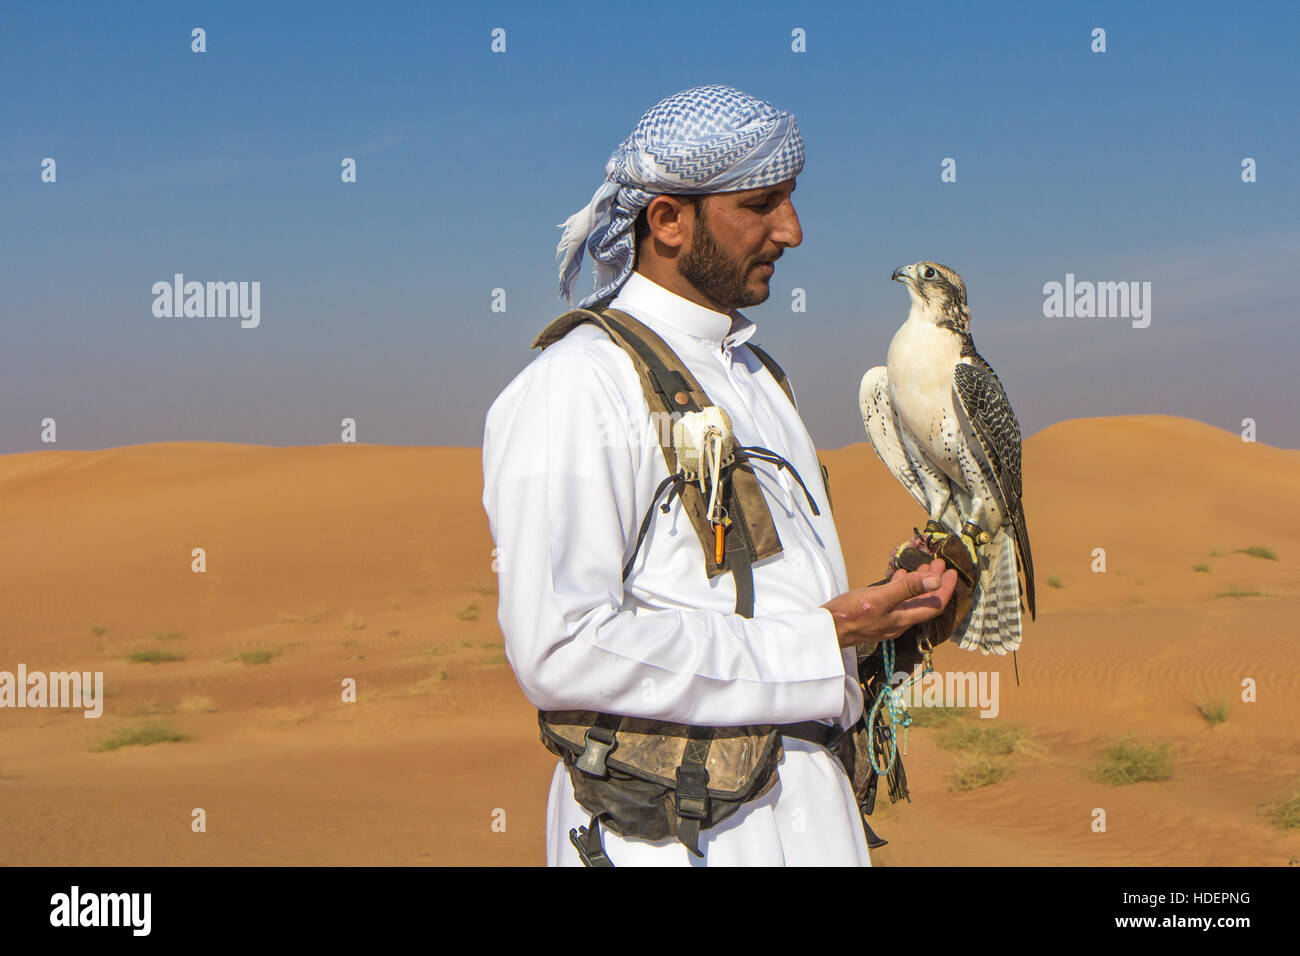 Voce maschile saker falcon (Falco cherrug) con una falconer vestito in tradizionali abiti arabi durante uno spettacolo di falconeria. Dubai, EAU. Foto Stock